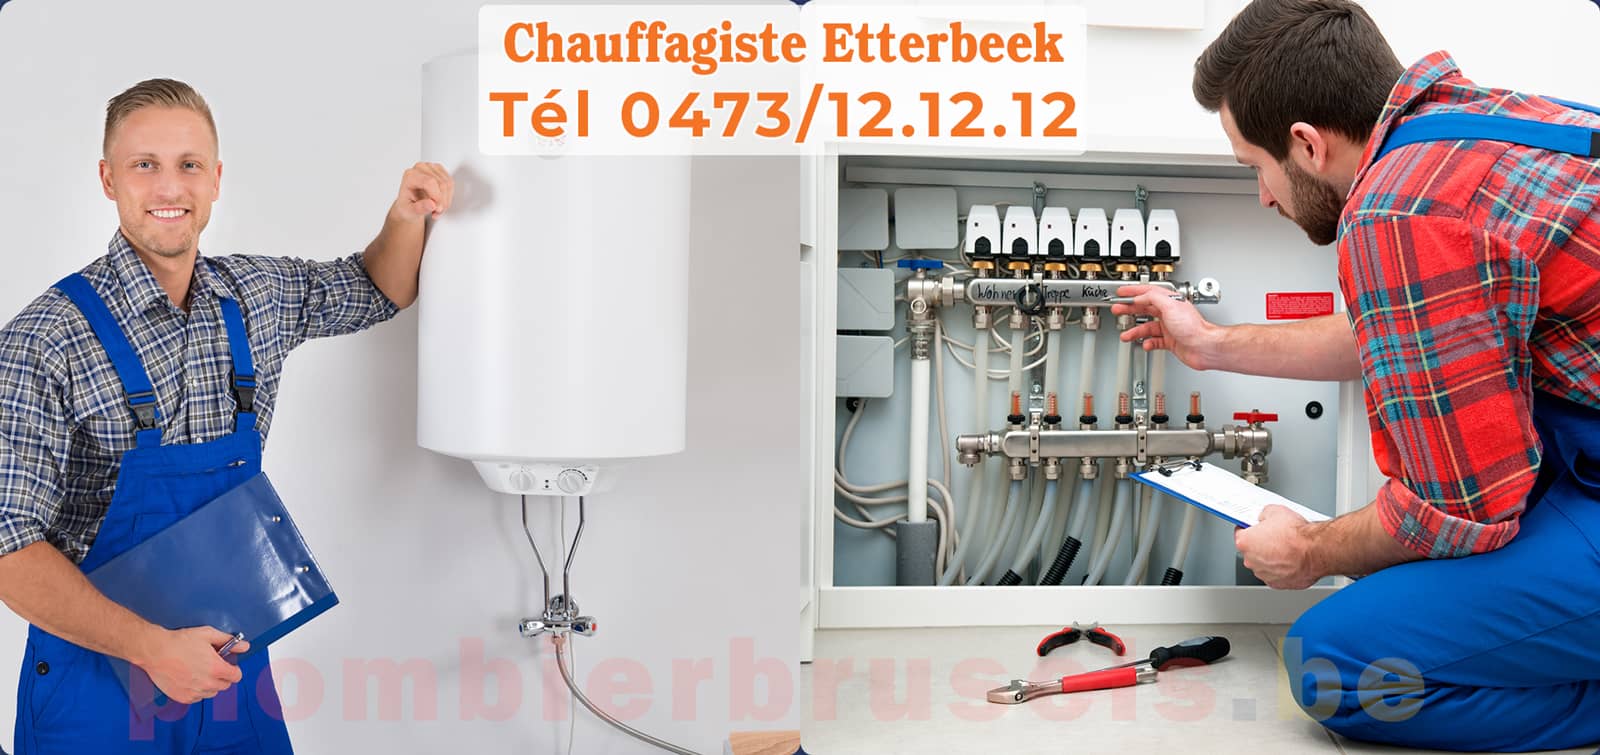 Chauffagiste Etterbeek service de Chauffage tél 0473/12.12.12